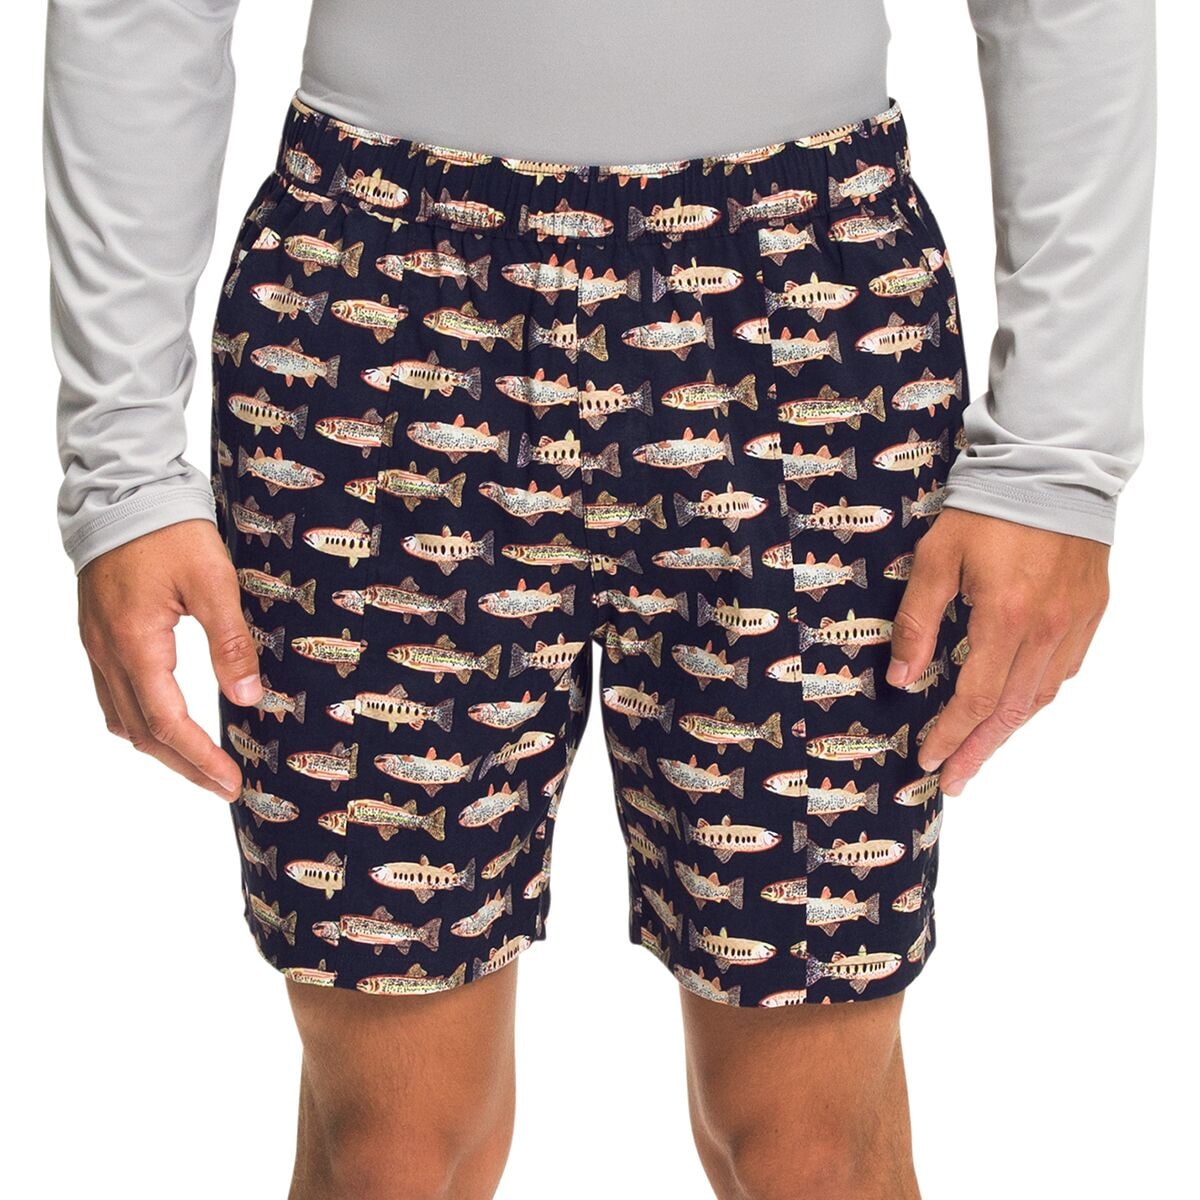 Mens Printed Shorts 